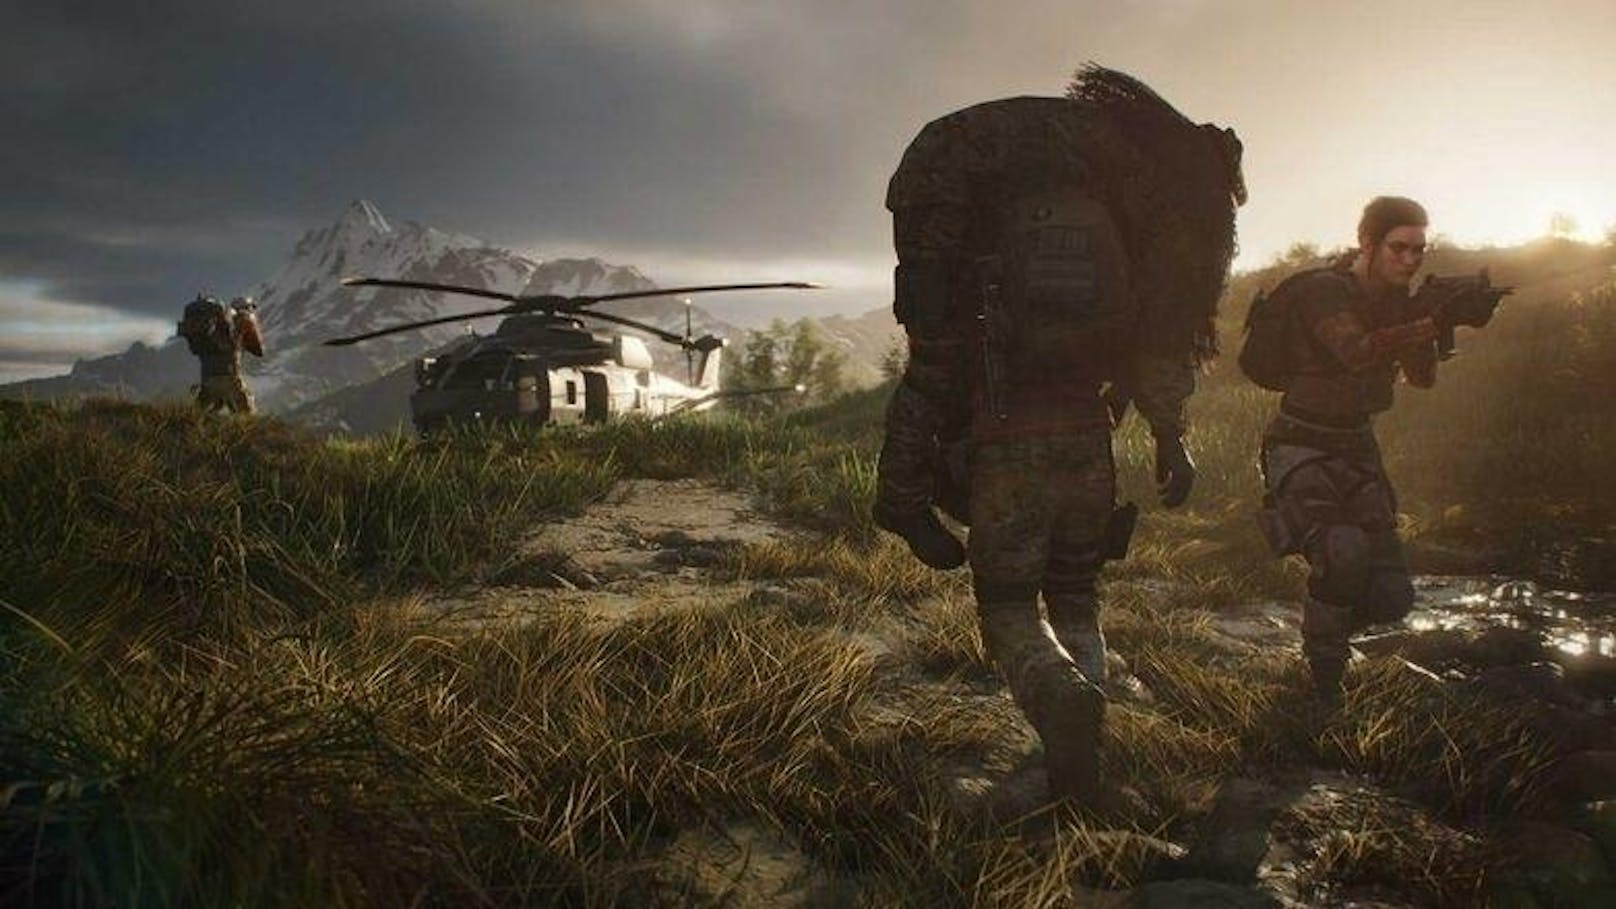 Ubisoft veröffentlichte einen neuen Trailer zu "Tom Clancy's Ghost Recon Breakpoint". Der "Big Bad Wolves"-Trailer bietet einen poetischen Überblick der Kernelemente des Spiels und dem ewig währenden Zwist von "Geistern" und "Wölfen". "Tom Clancy's Ghost Recon Breakpoint" wird ab 4. Oktober auf PlayStation 4, Xbox One und Windows PC sowie Uplay+, dem Abo-Dienst von Ubisoft für Windows PC, verfügbar sein. <a href="https://www.youtube.com/watch?v=2r3KwRpyiOA" target="_blank">Der Trailer kann hier gefunden werden.</a>